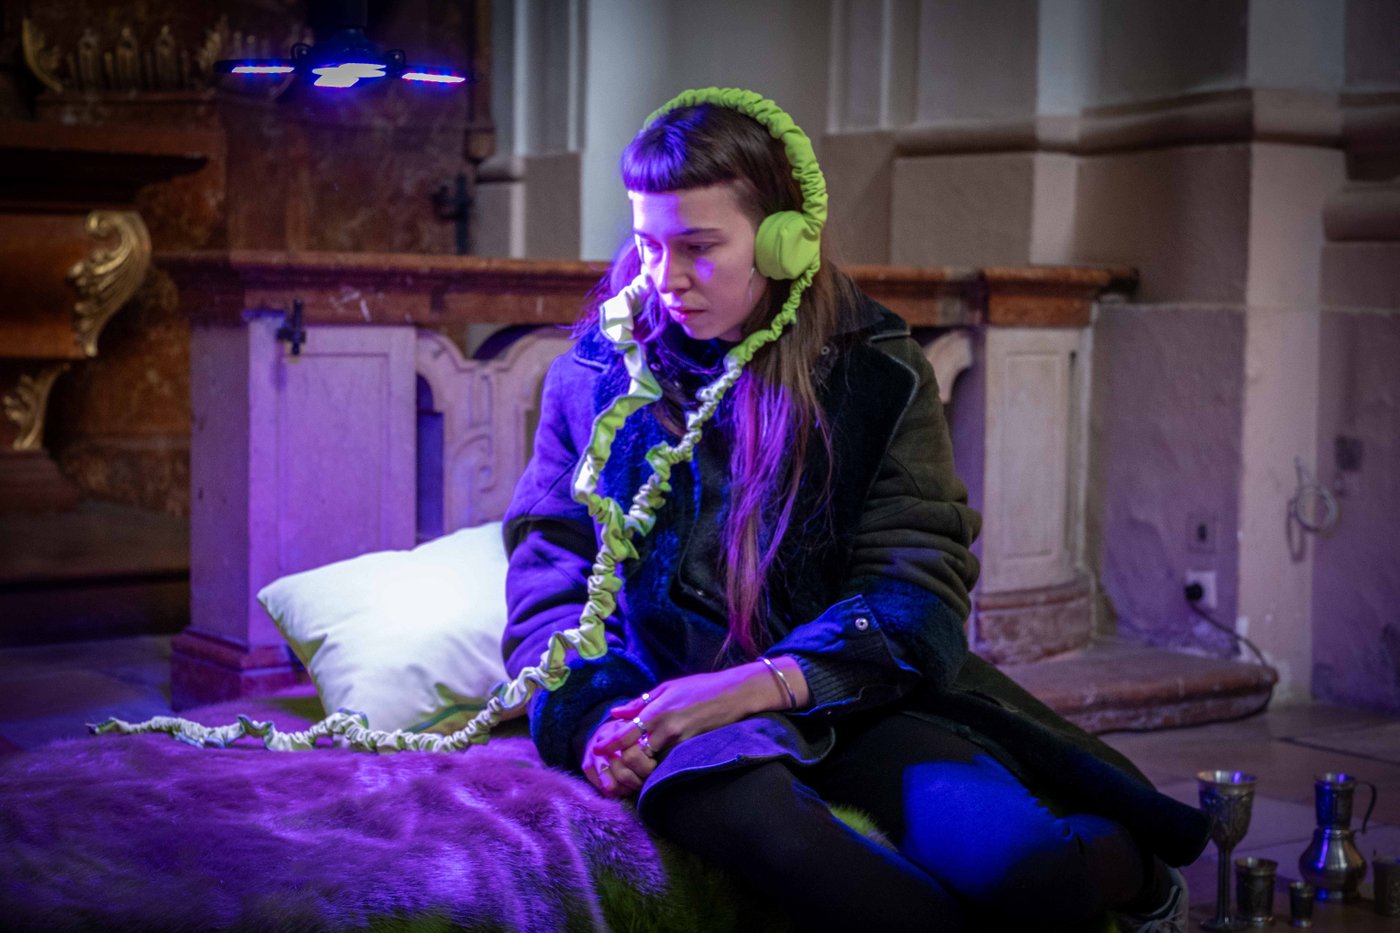 Frau mit grünen Kopfhörern sitzt auf einer Matratze in einer Kirche und wird von blauem Licht beleuchtet